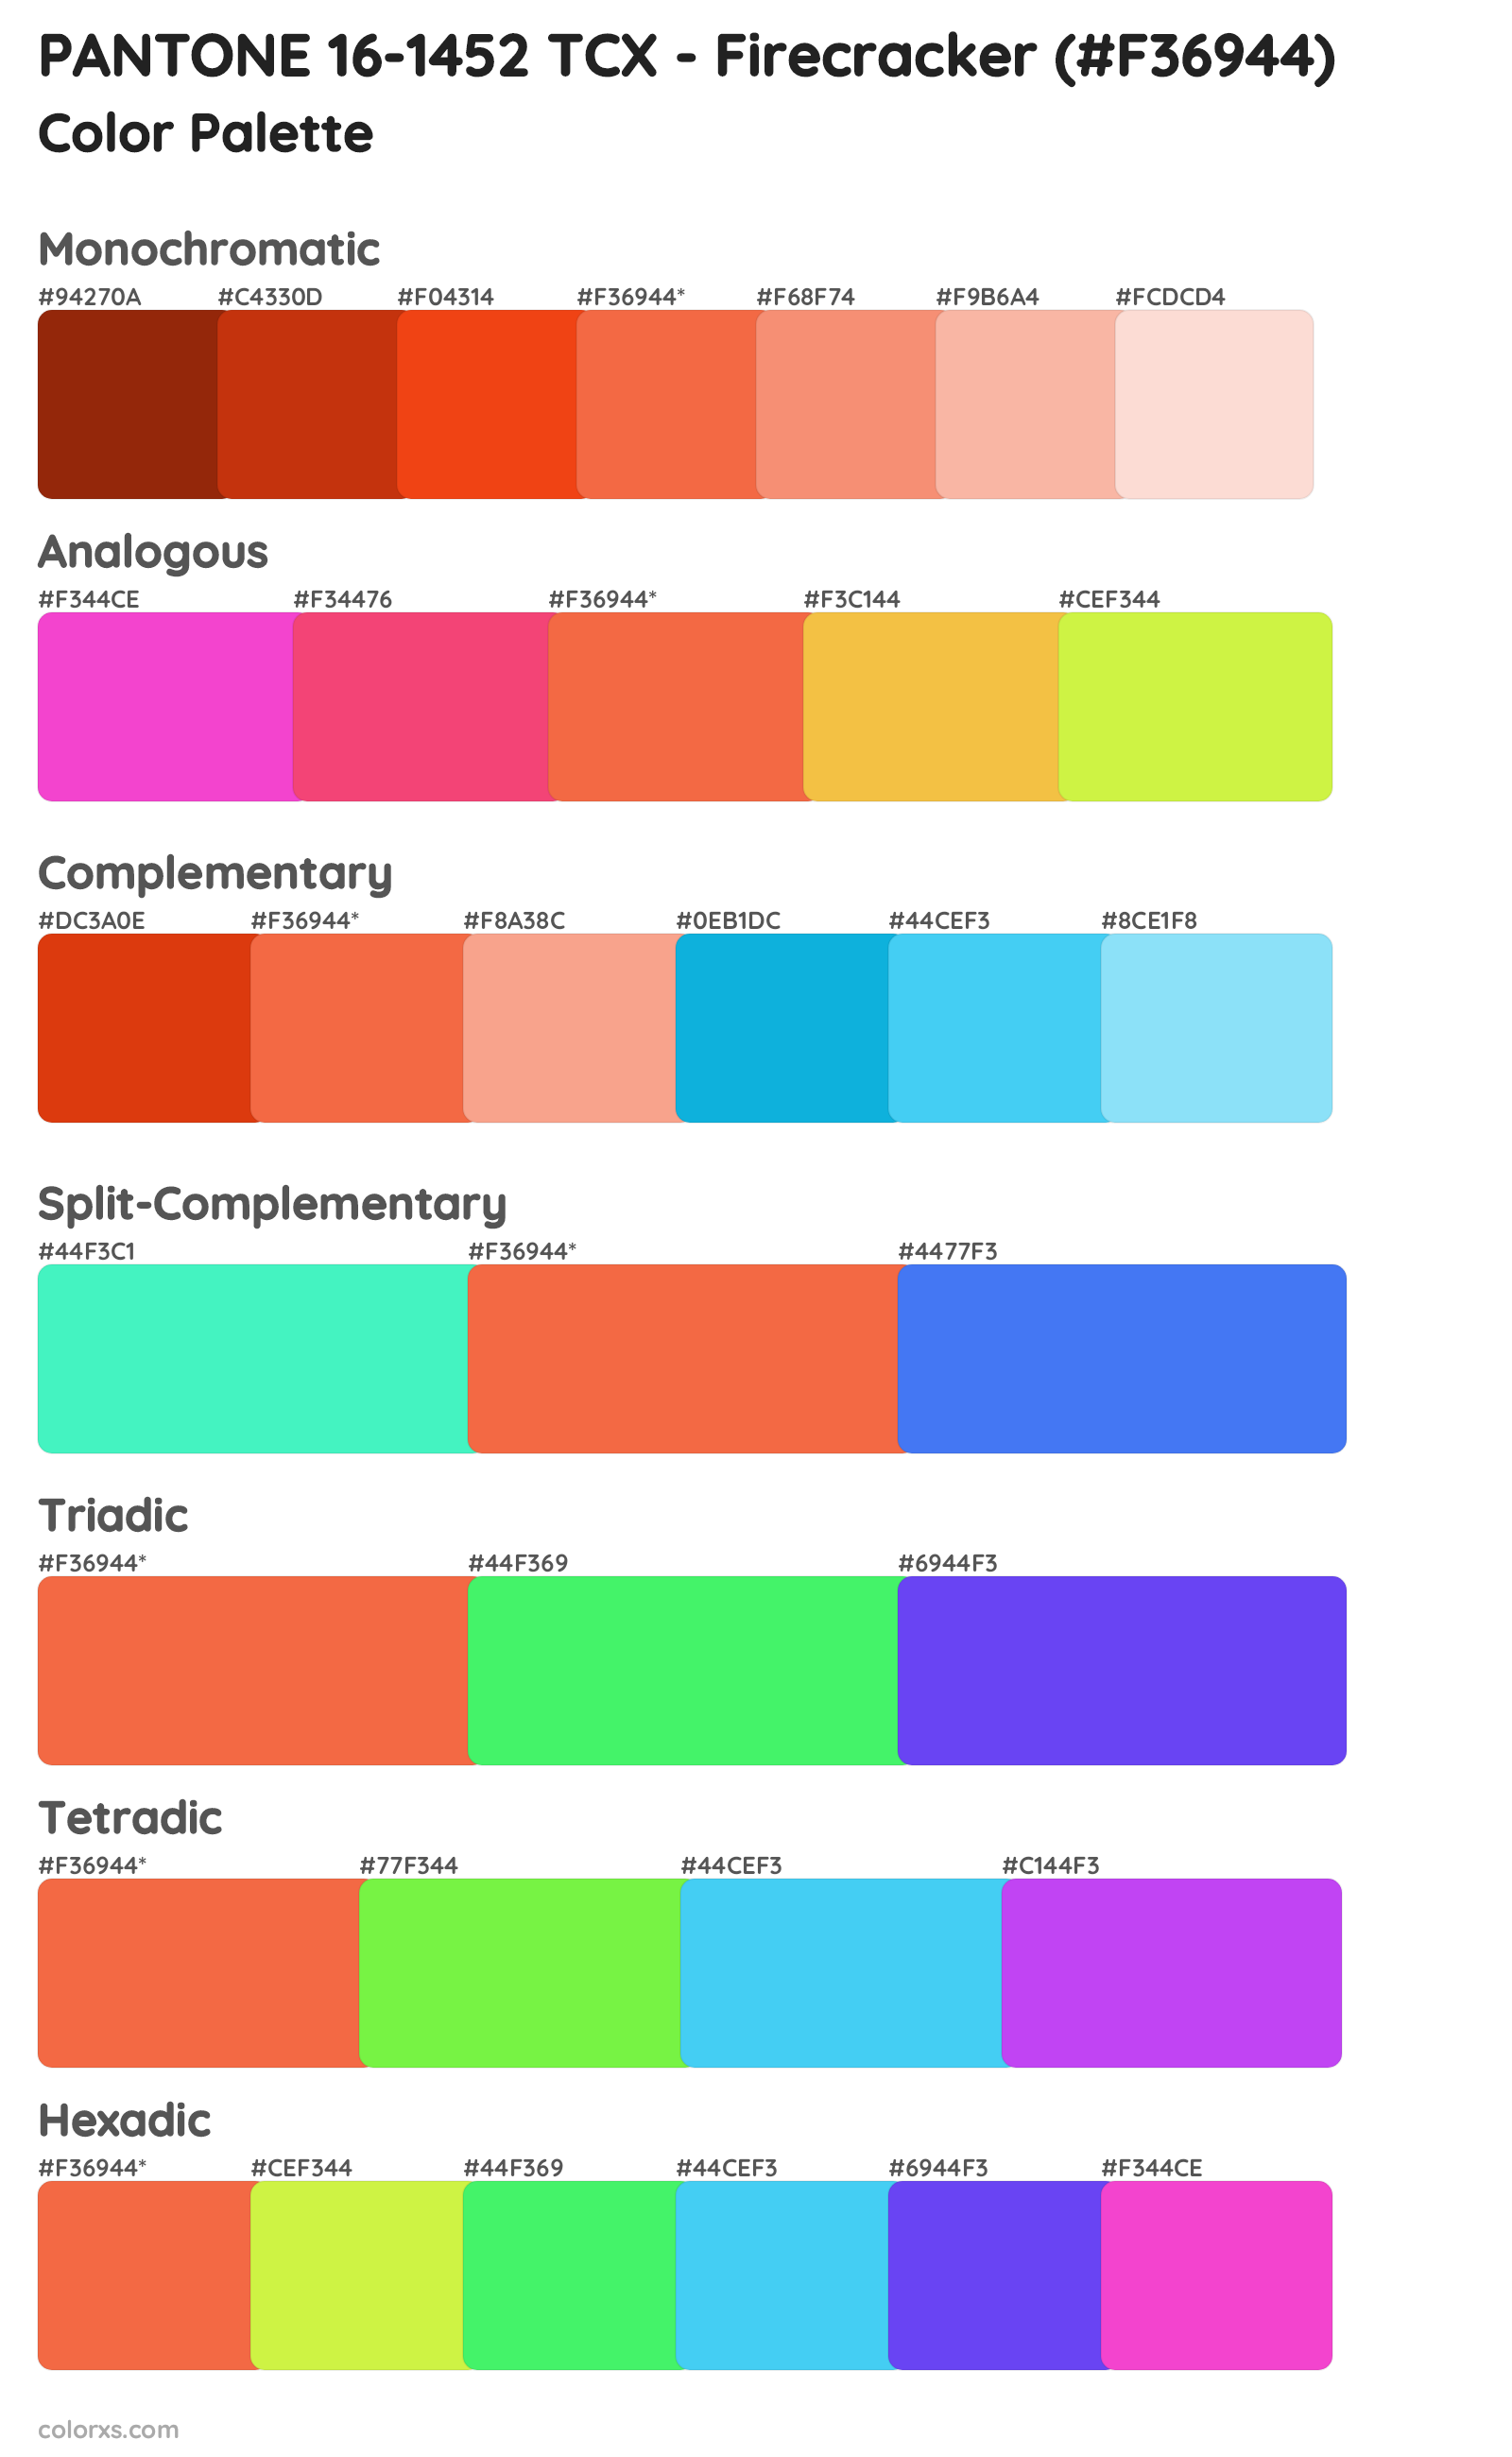 PANTONE 16-1452 TCX - Firecracker Color Scheme Palettes